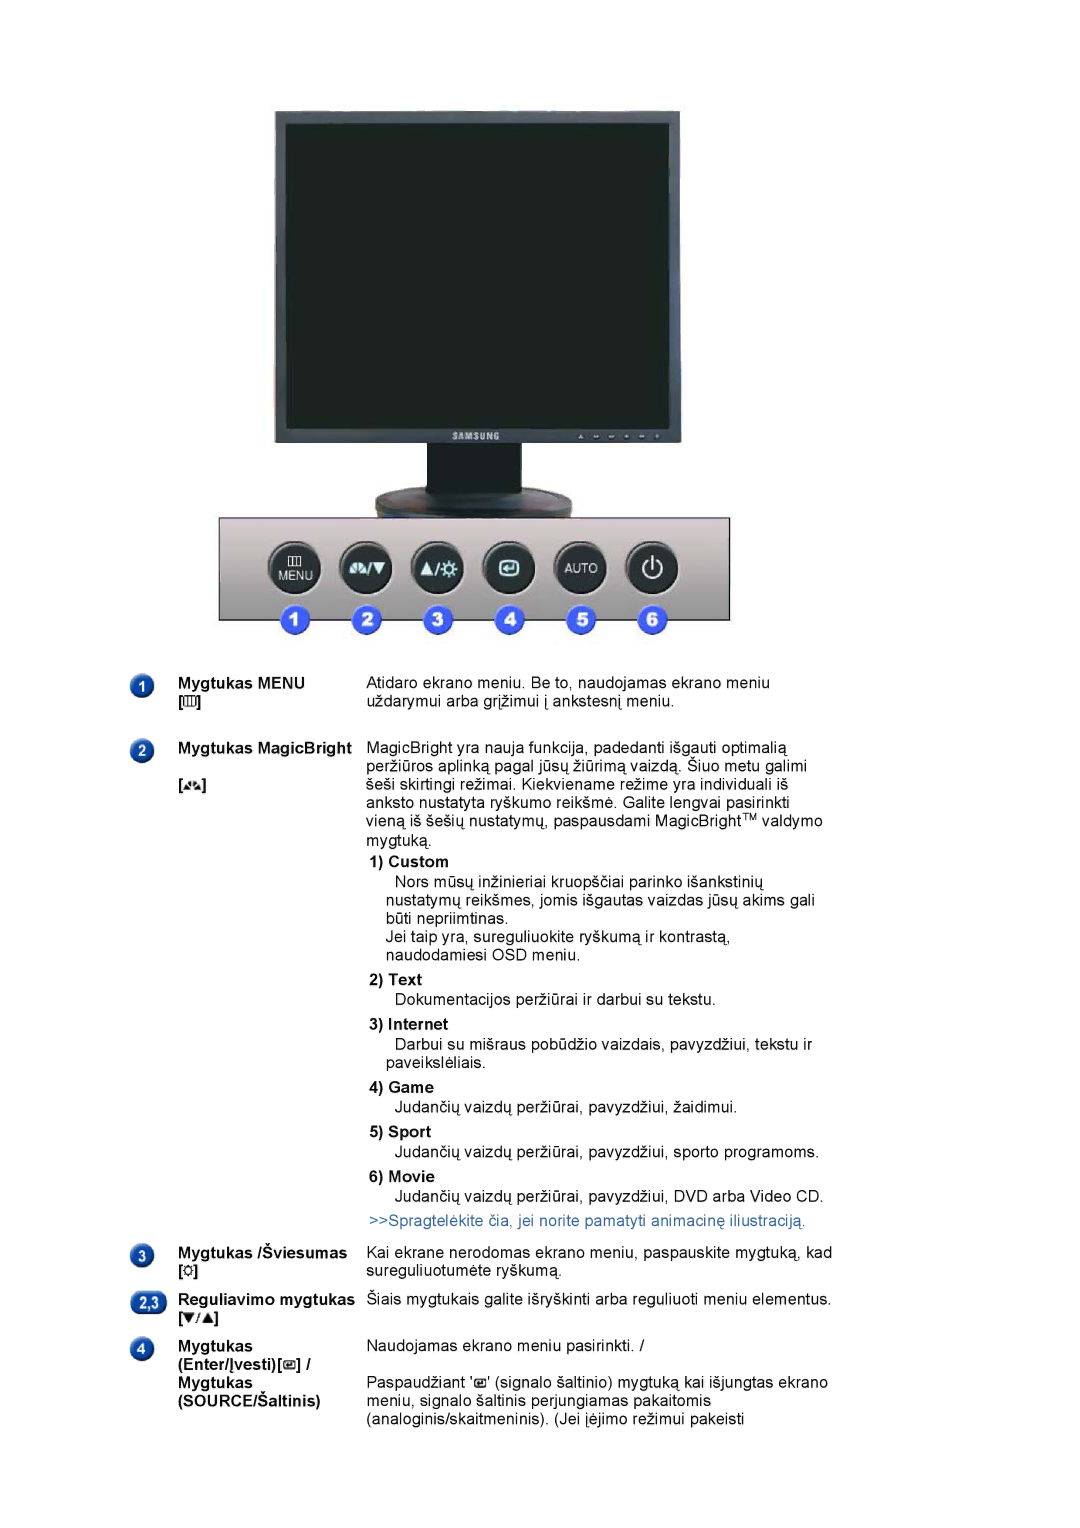 Samsung LS19HADKSP/EDC manual Mygtukas Menu, Uždarymui arba grįžimui į ankstesnį meniu, Custom, Text, Internet, Game, Sport 